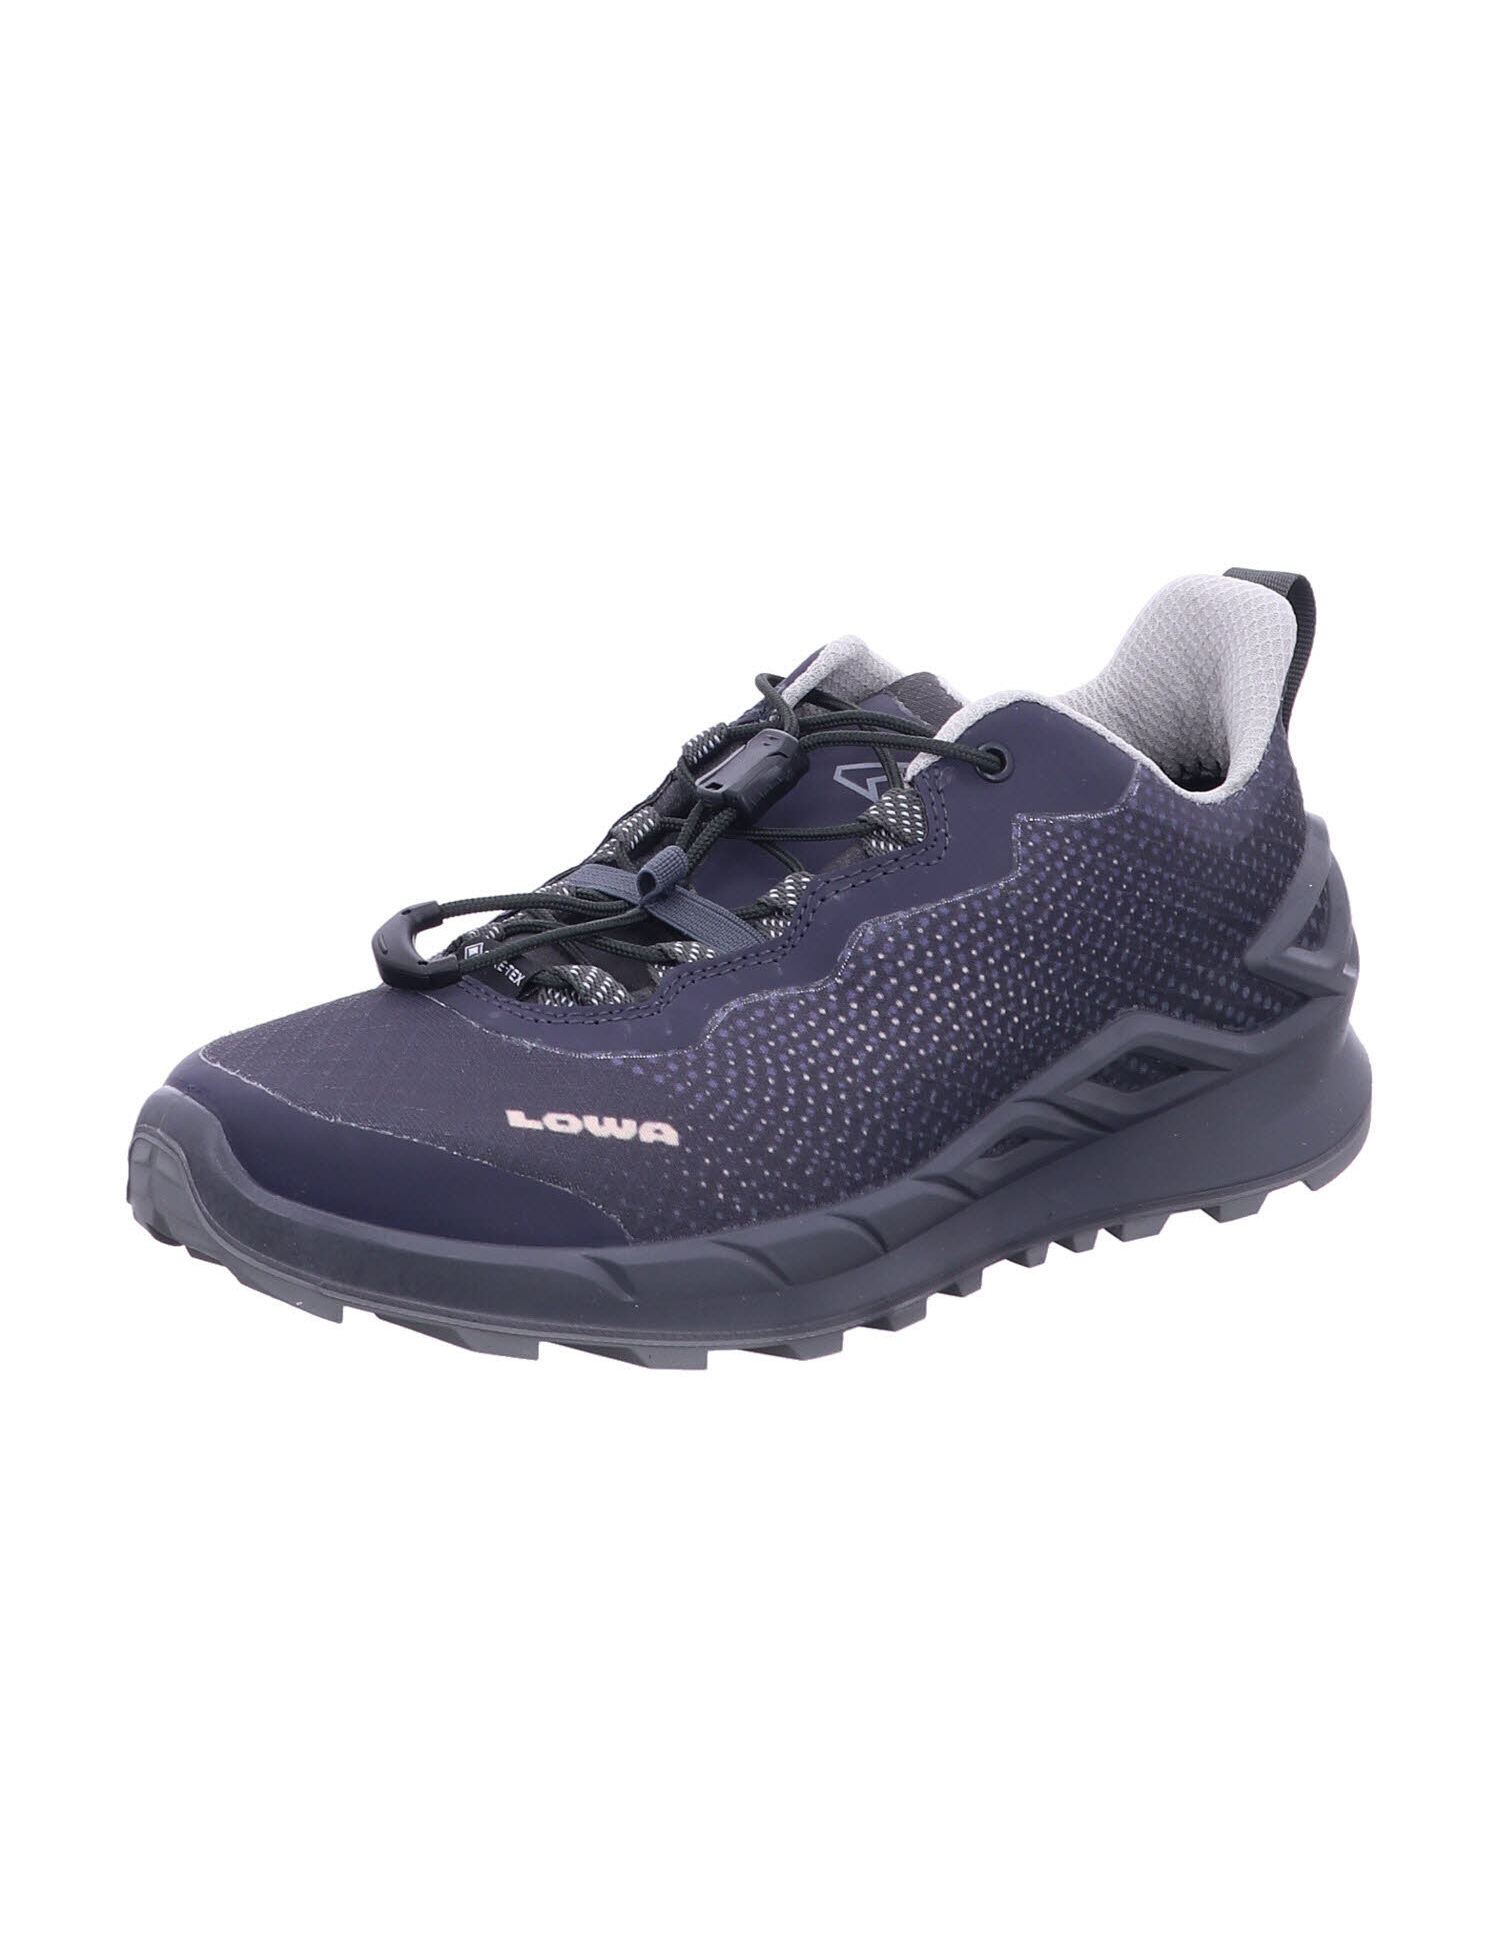 Походная обувь LOWA Outdoorschuh MERGER GTX LO WS, цвет anthrazit/lavendel